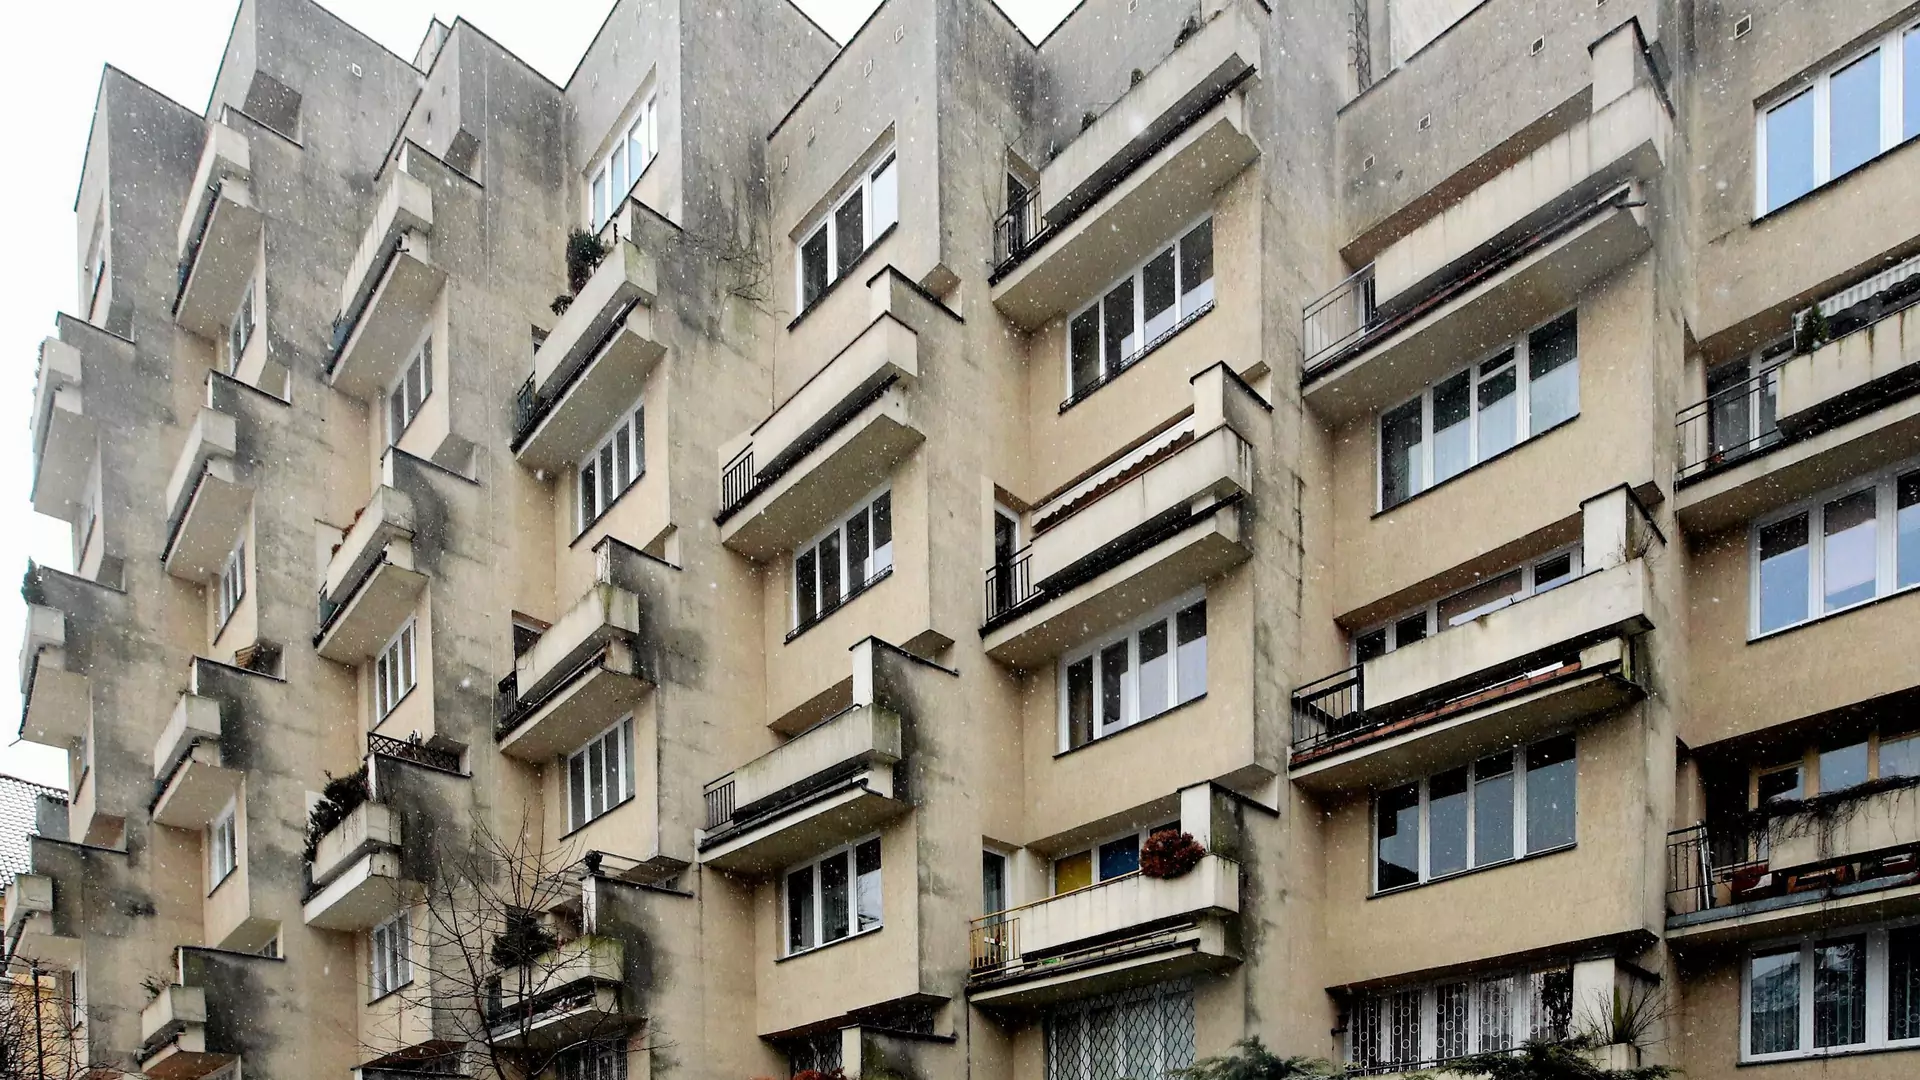 Ten dziwny blok stoi ukryty w Warszawie. To apartamentowiec dla PRL-owskich władz